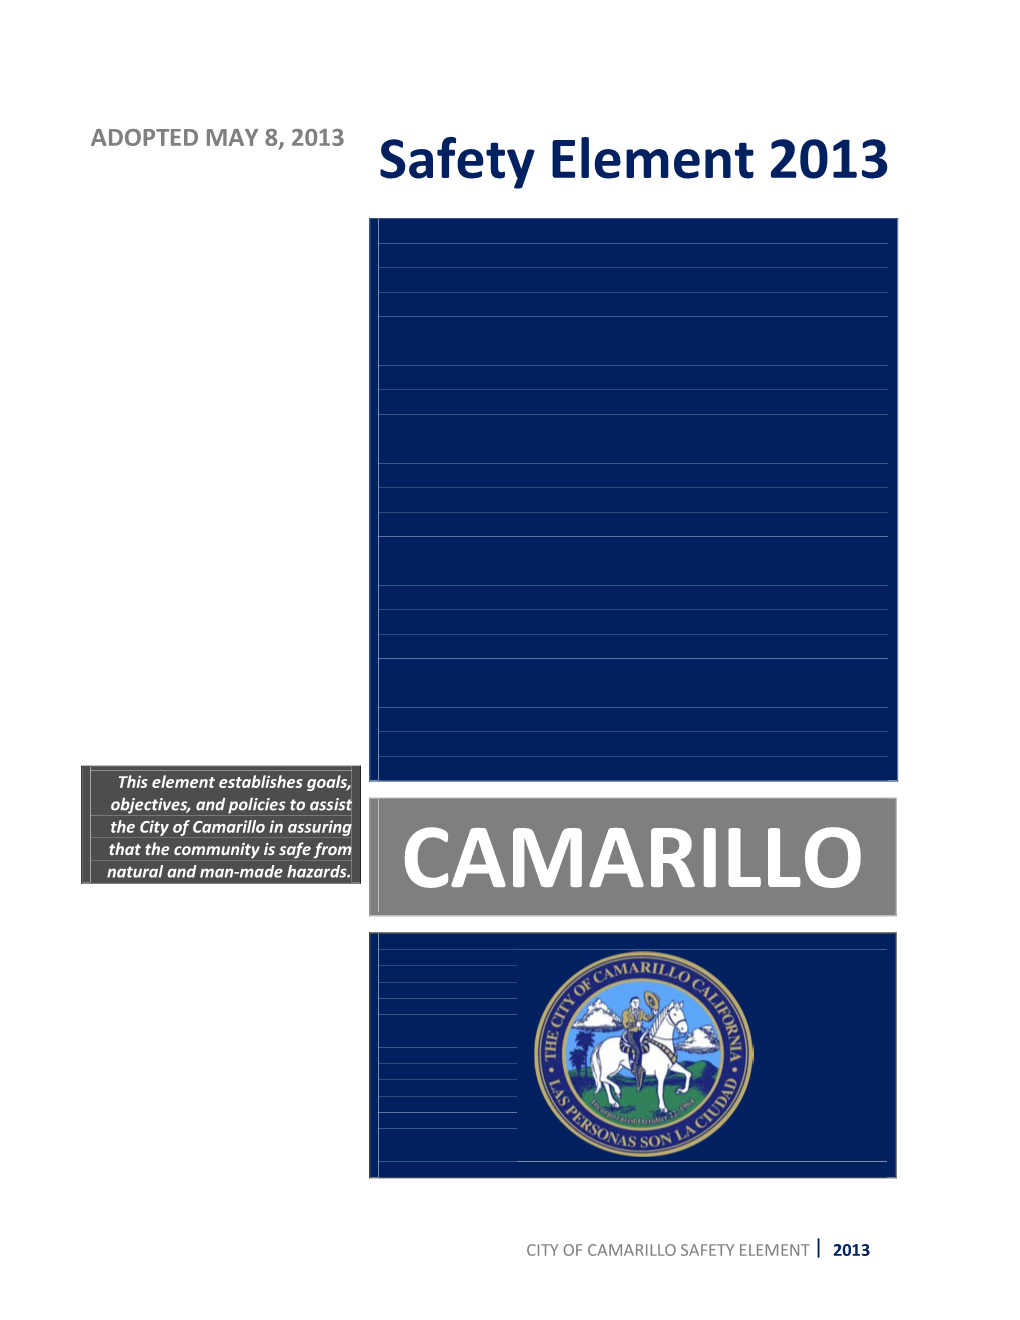 Safety Element 2013